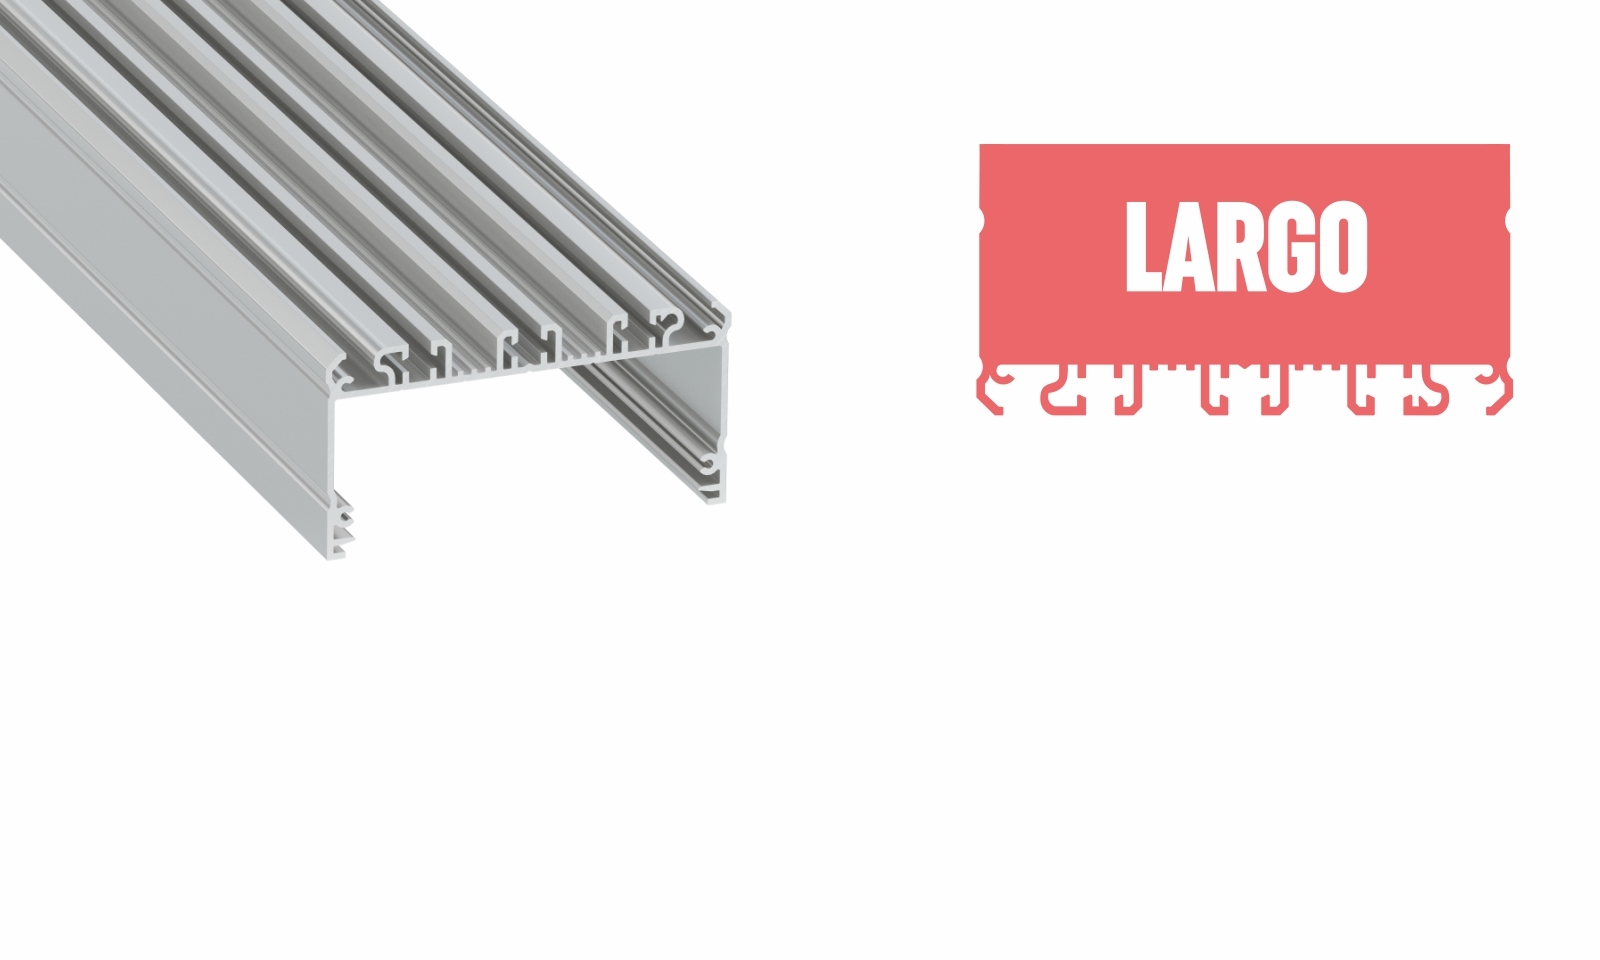 LUMINES "LARGO" surface mounted profile